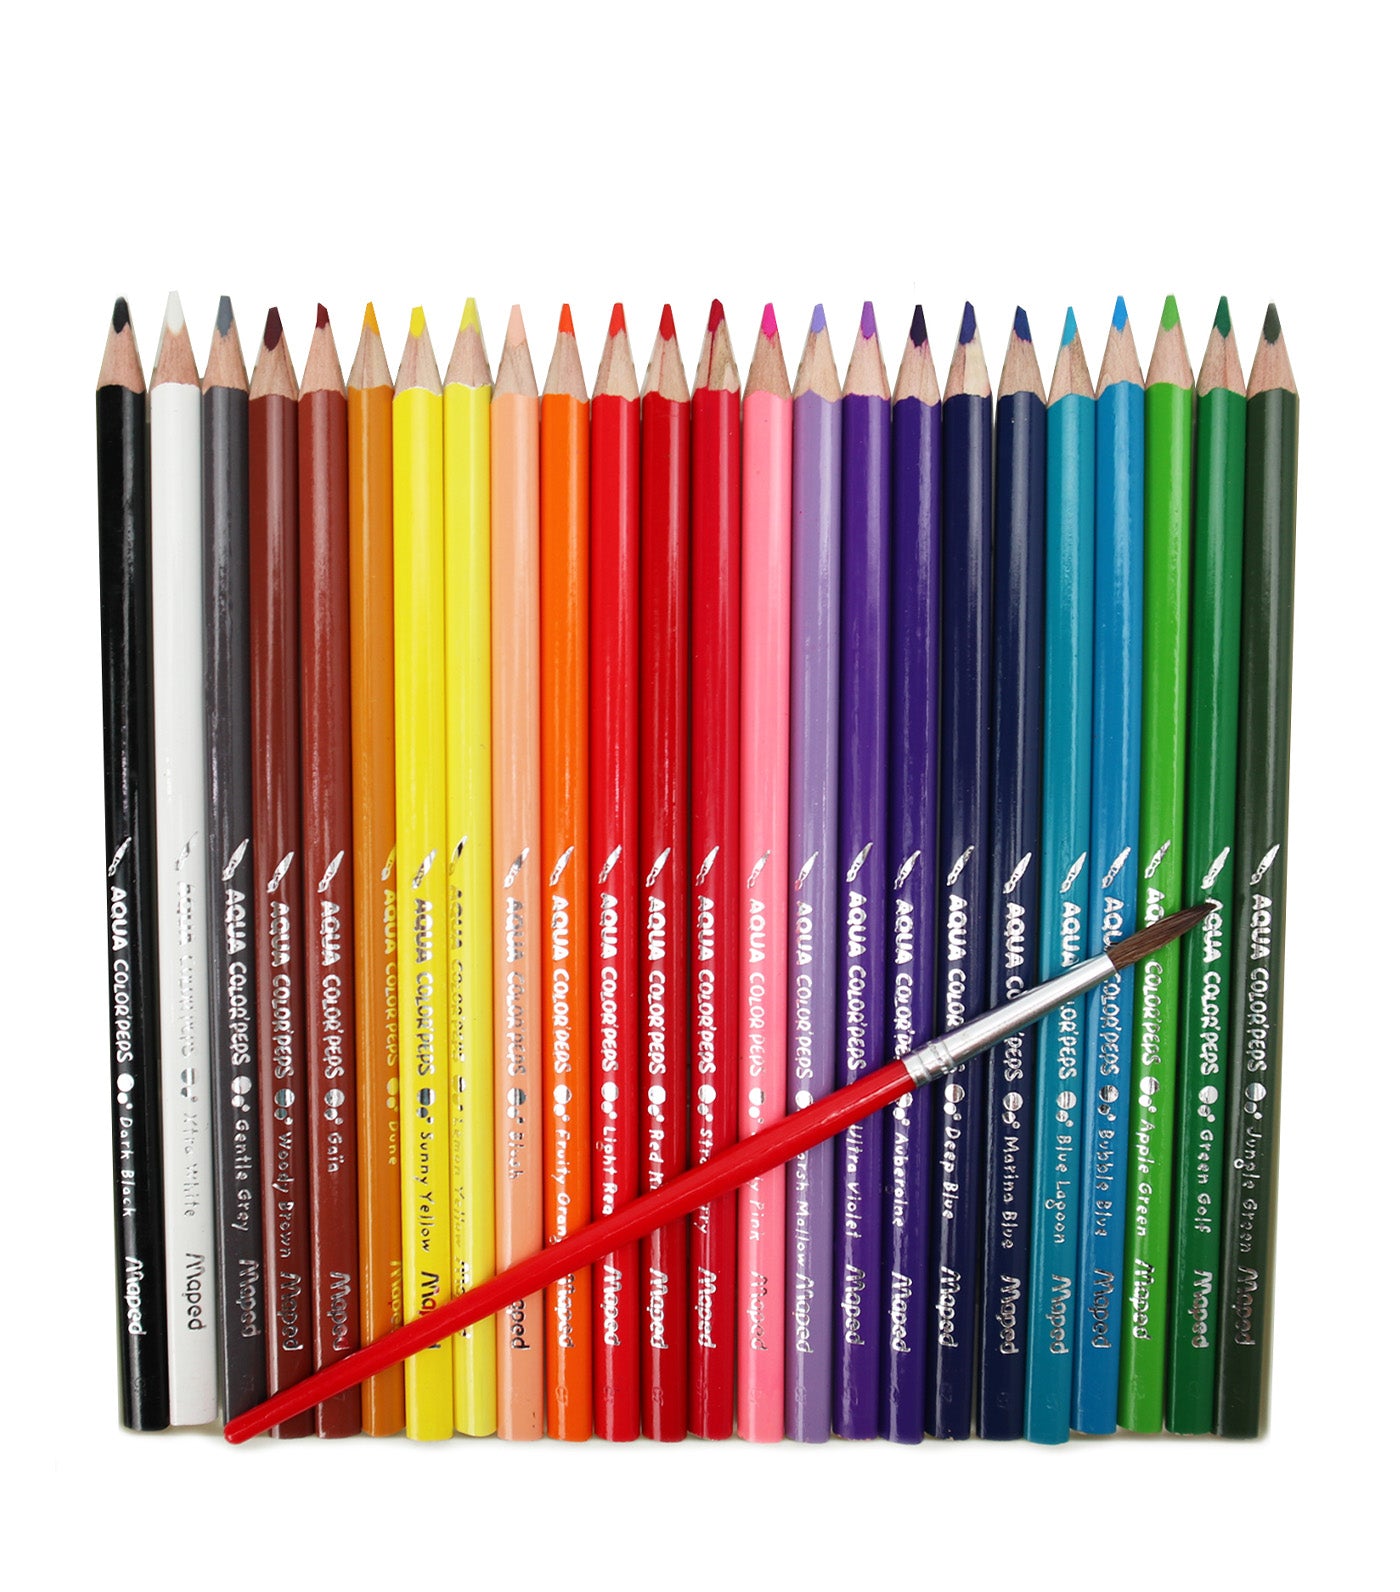 Color'Peps Aqua Colored Pencils x 24